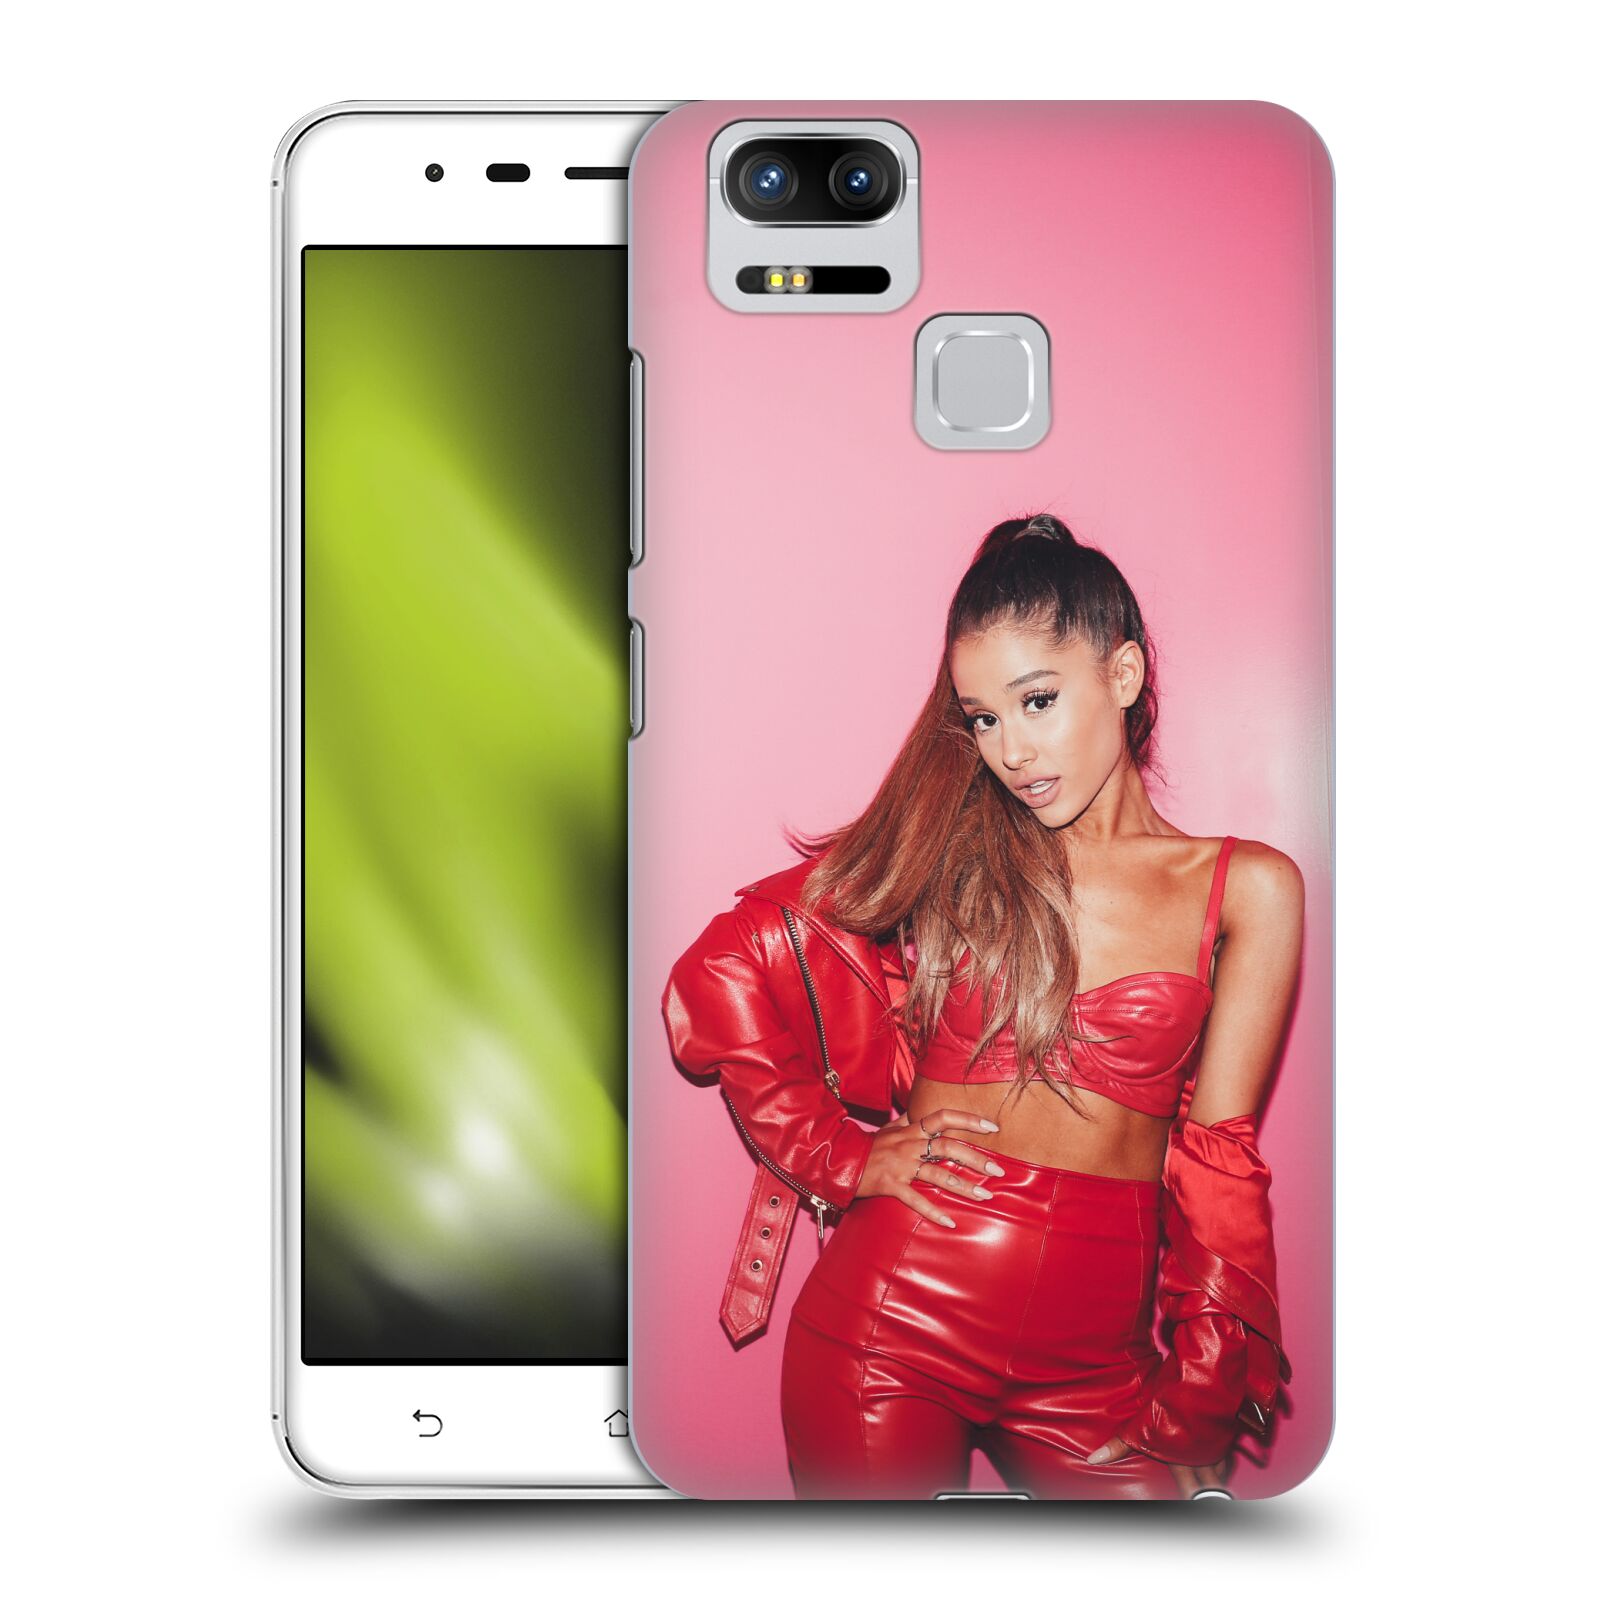 HEAD CASE plastový obal na mobil Asus Zenfone 3 Zoom ZE553KL zpěvačka Ariana Grande Dangerous Woman růžová